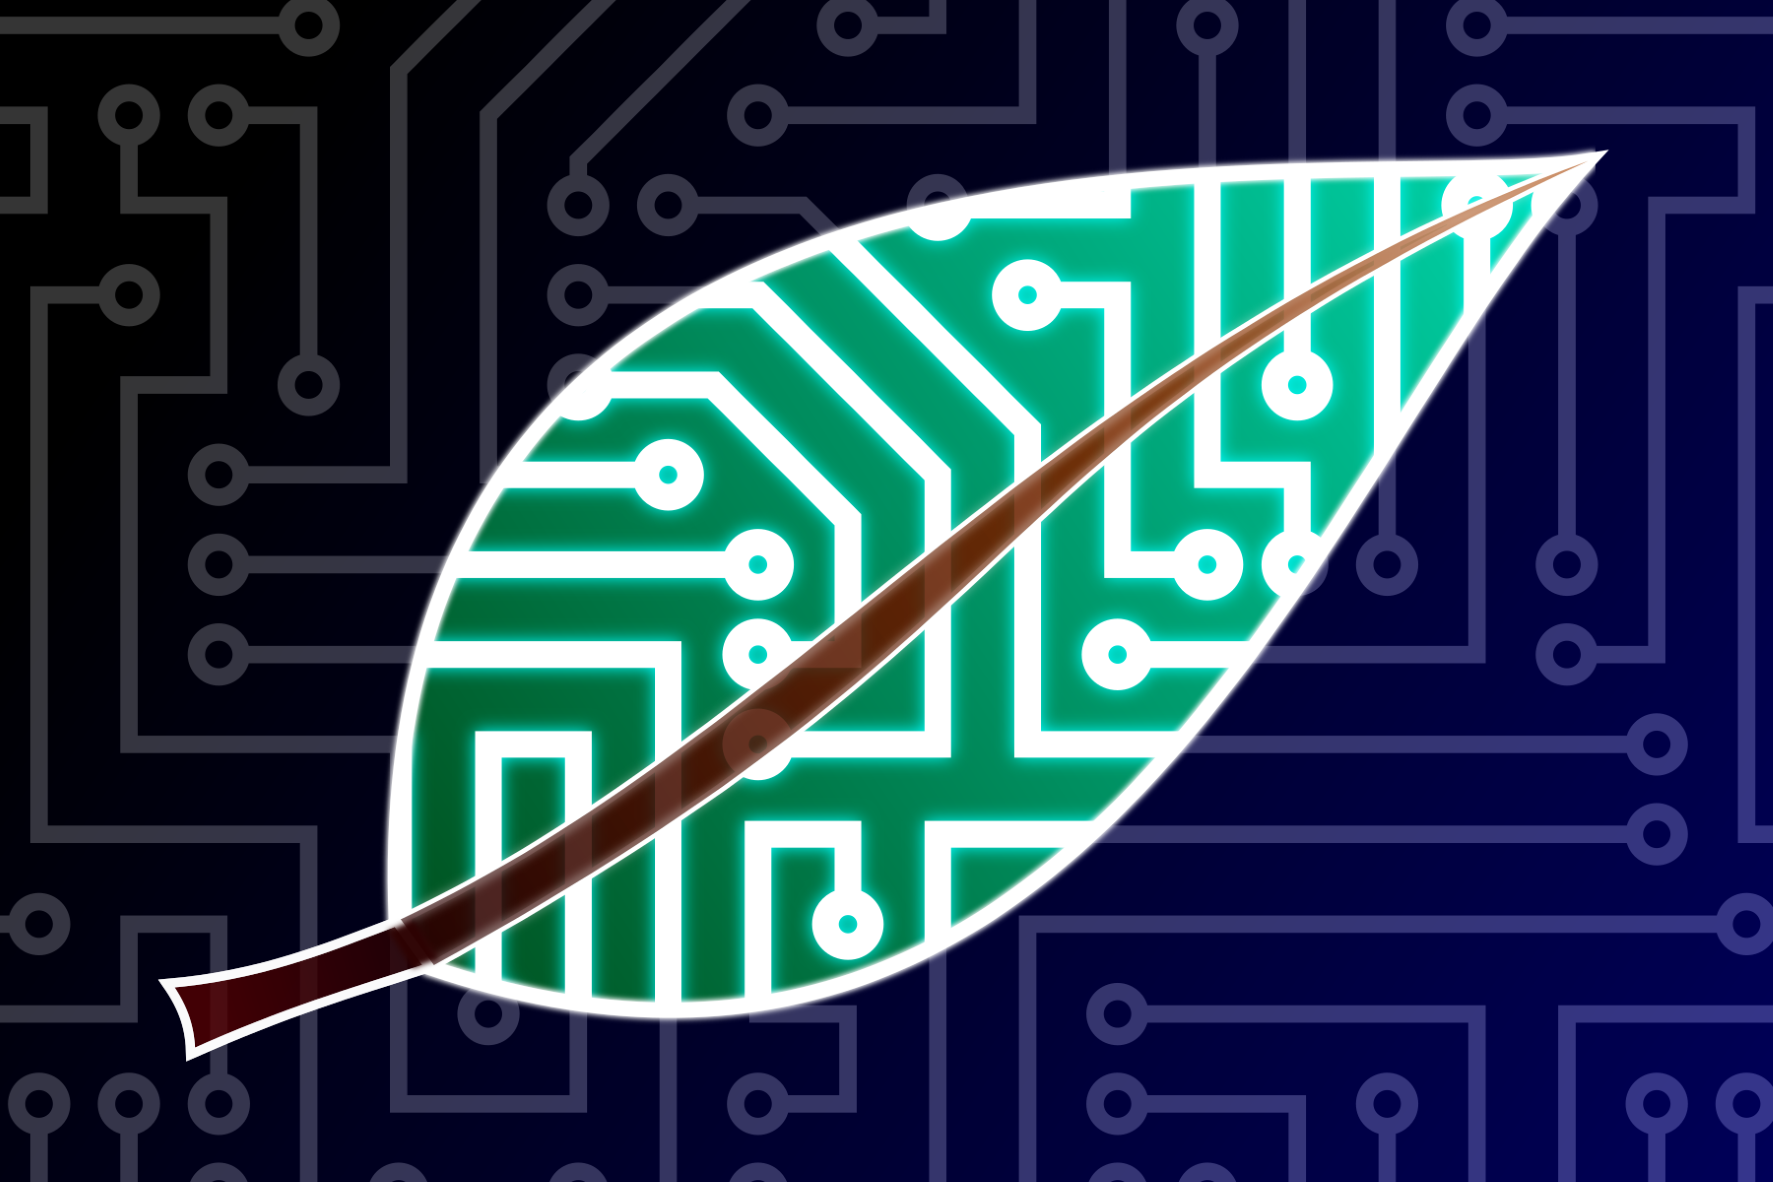 Cyber-leaf